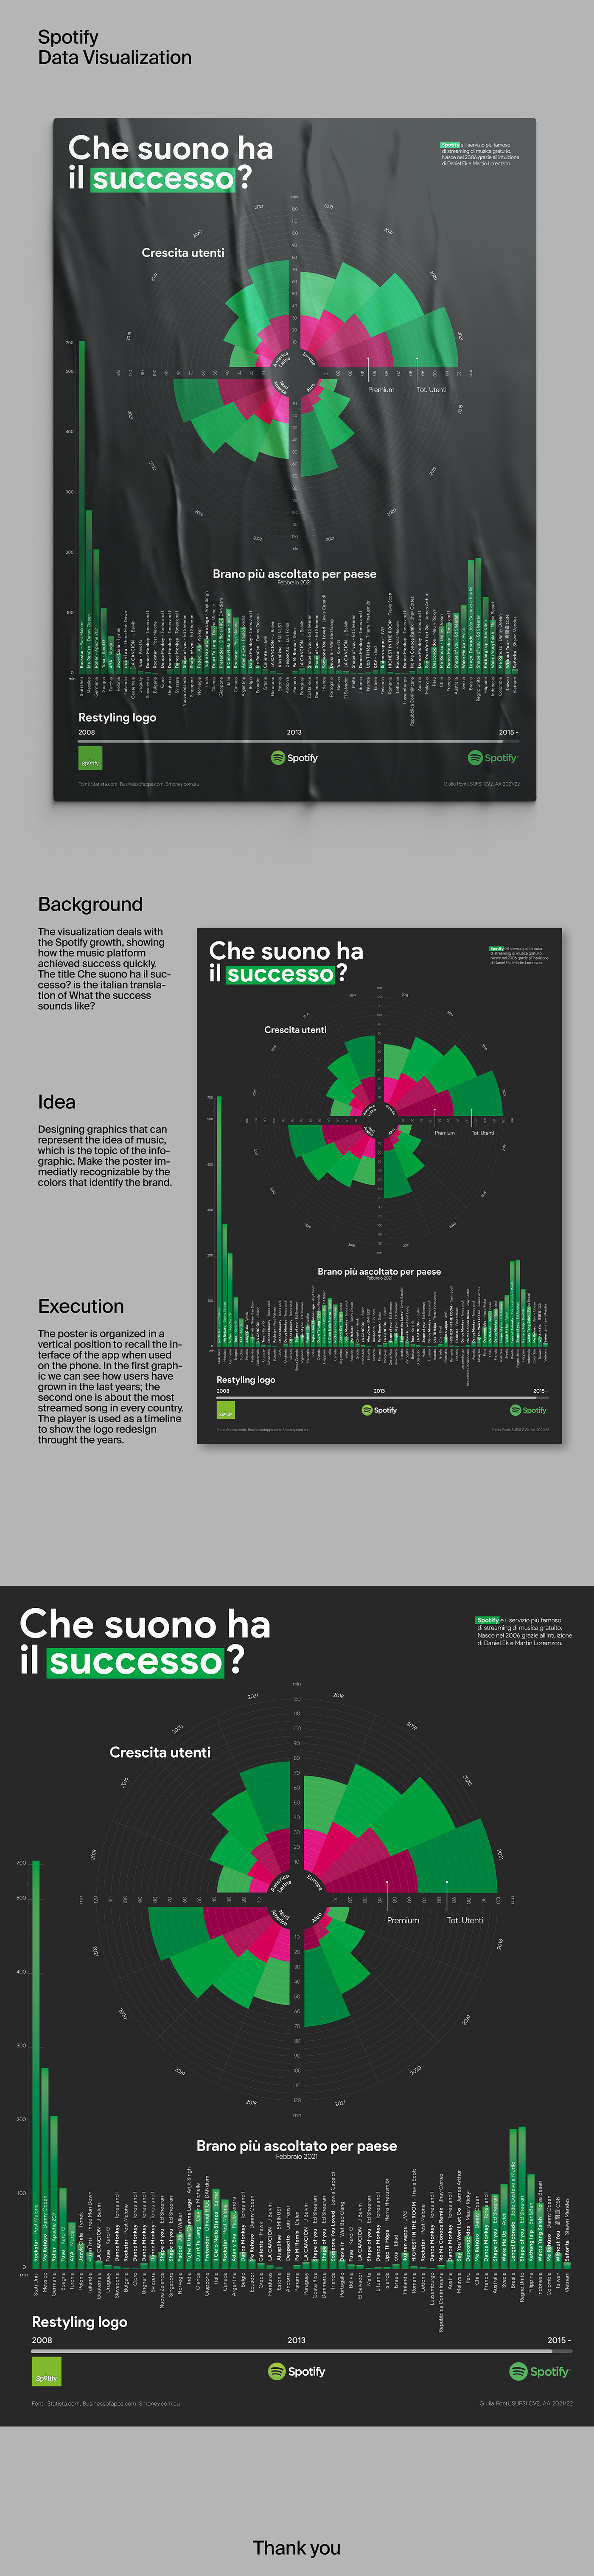 Data data visualization Dati illustrazione infografica infographic infographics music poster spotify